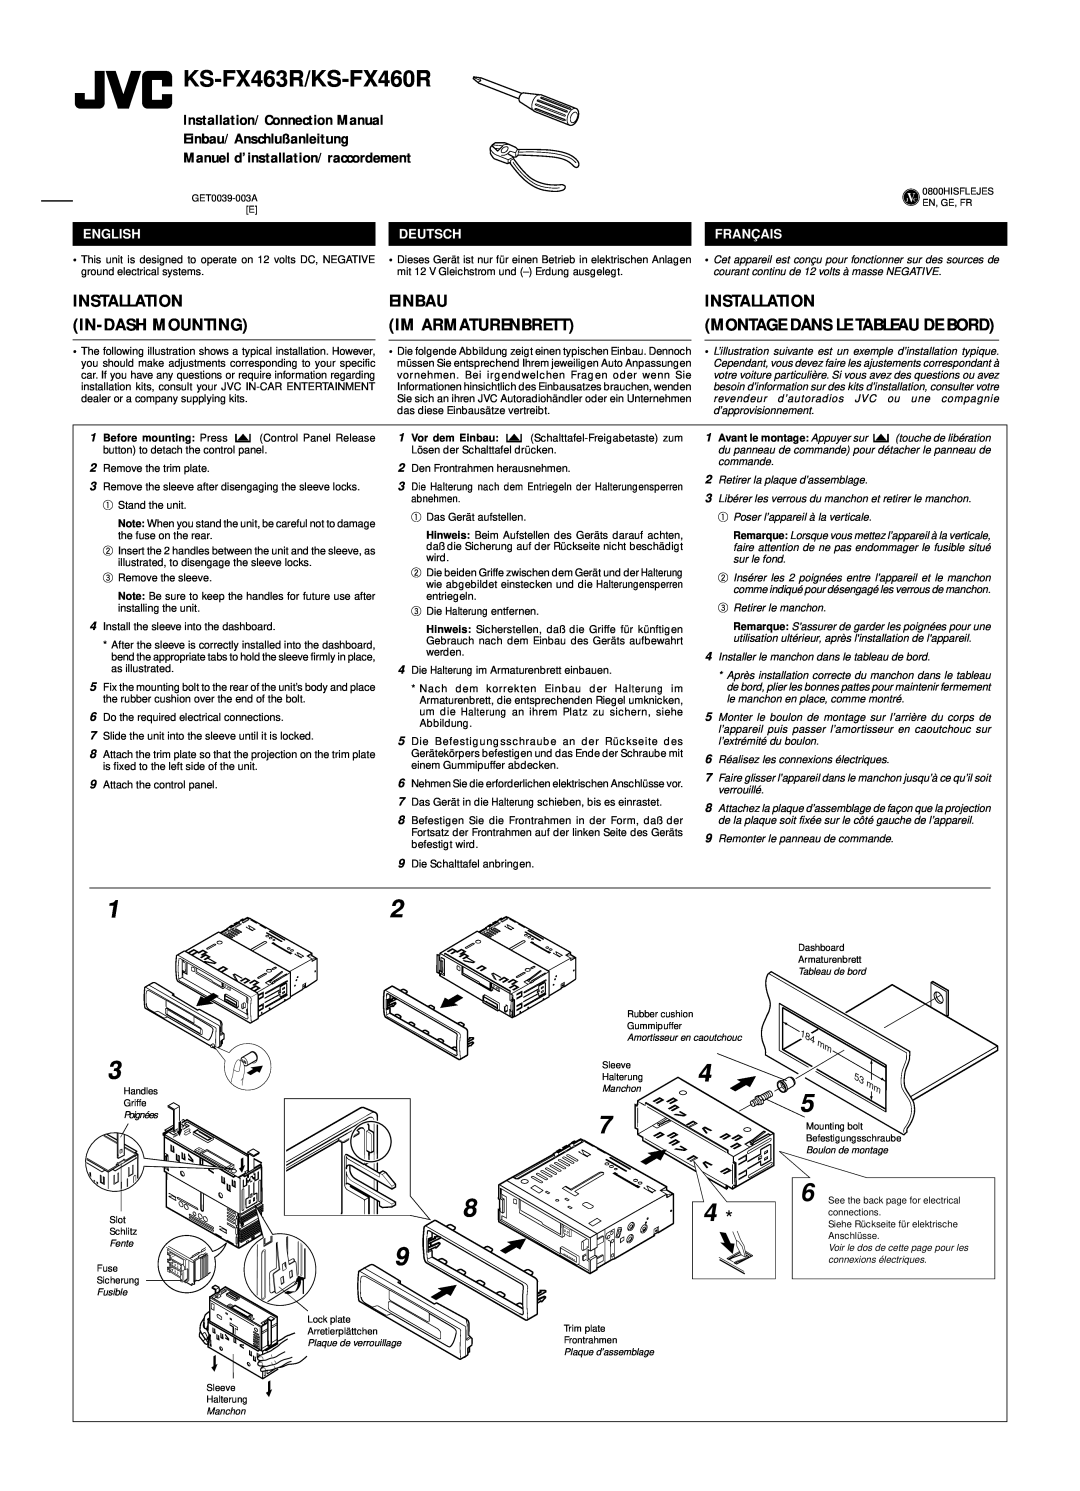 JVC manual Einbau Im Armaturenbrett, KS-FX463R/KS-FX460R, Installation/Connection Manual, Einbau/Anschlußanleitung 